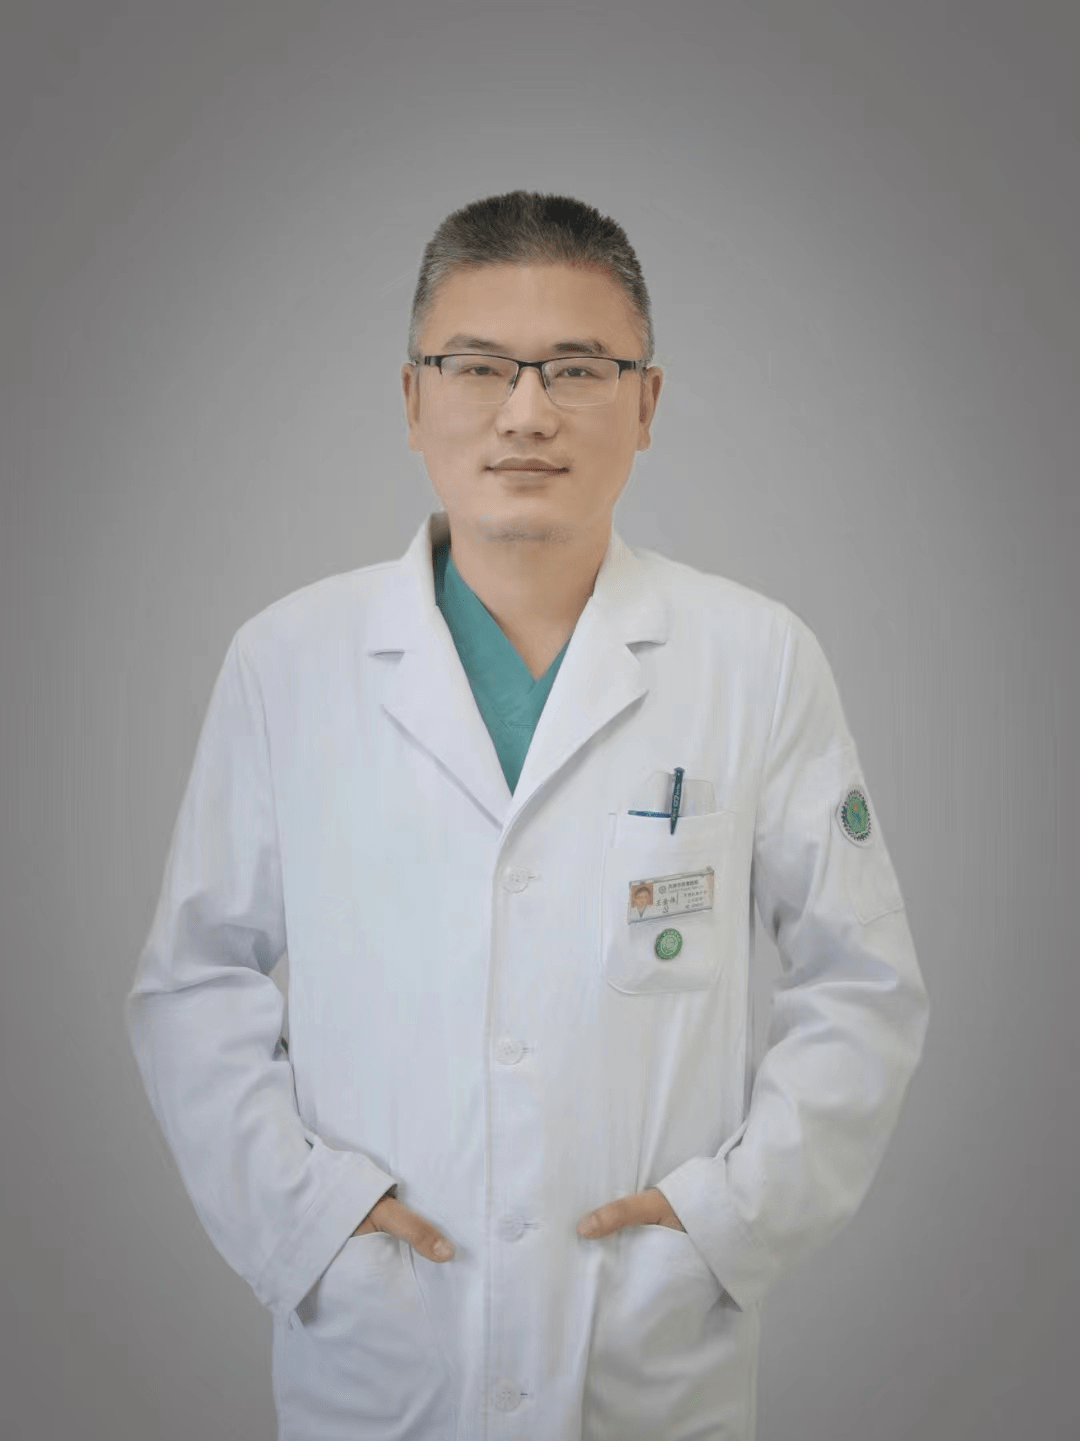 王金伟,主治医师,擅长各类普外常见病,多发病的开放,腔镜微创手术,为